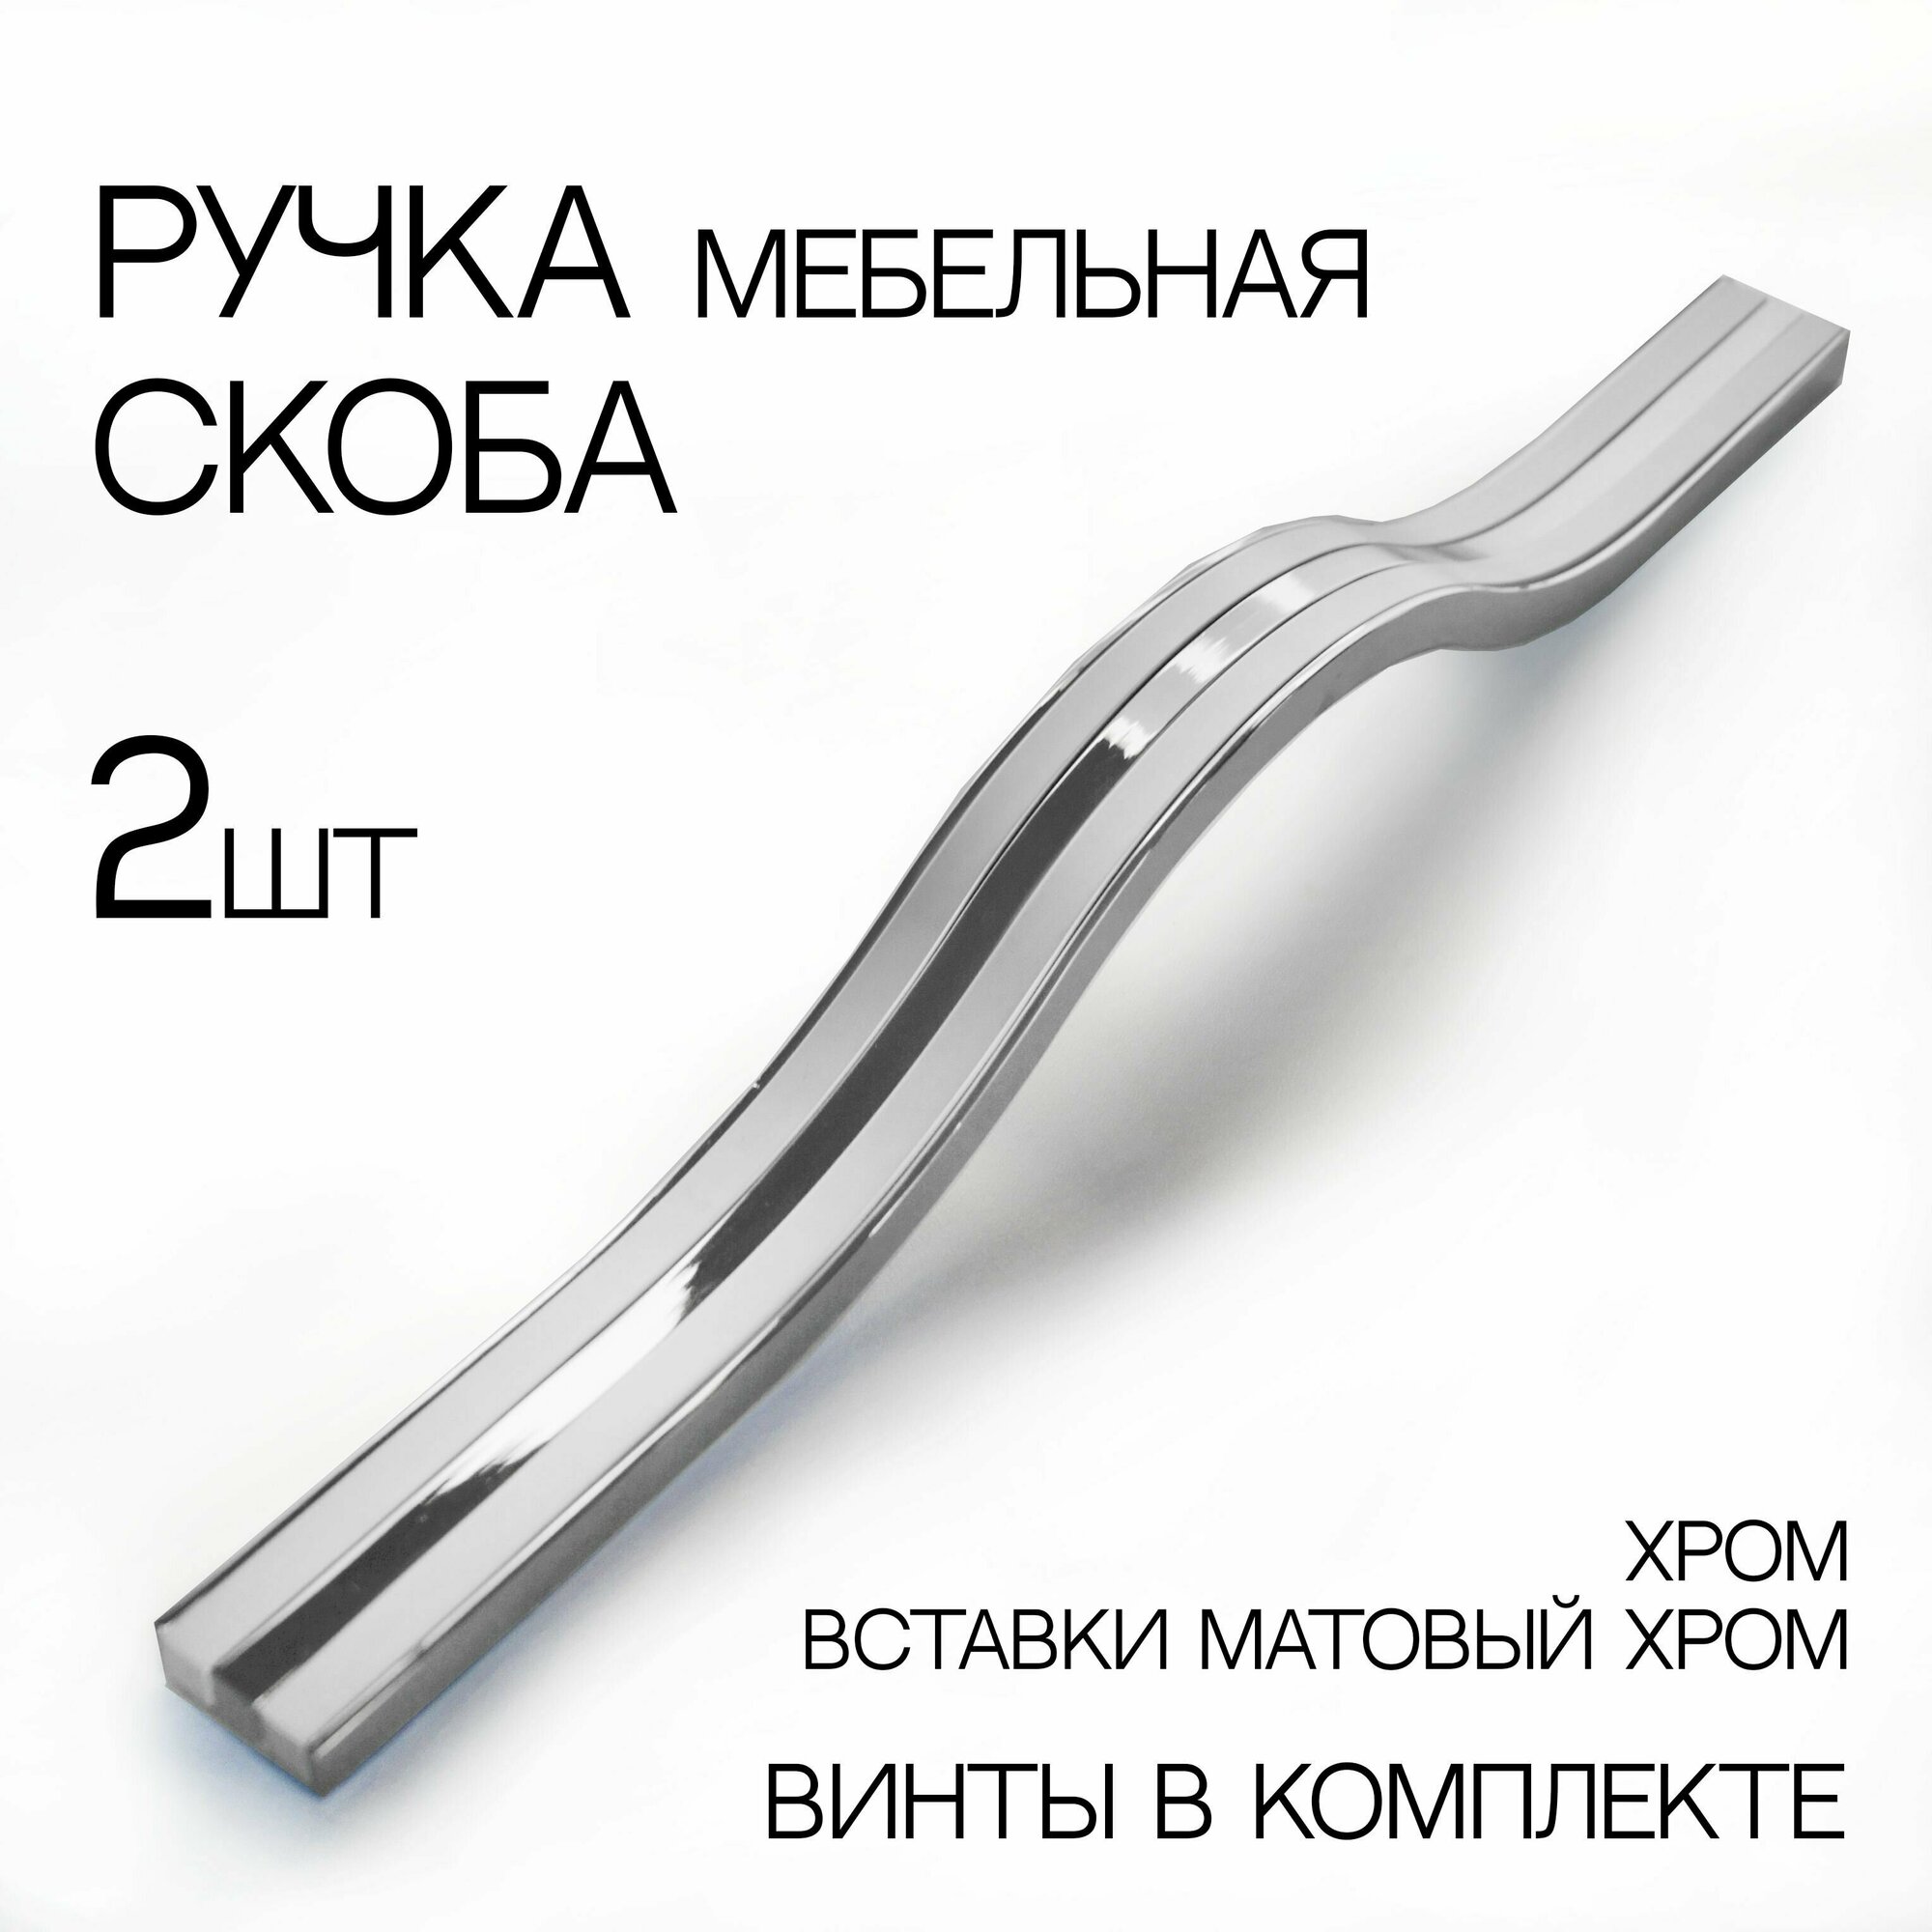 Мебельная ручка на 256 мм, матовый хром/хром, 2 шт.